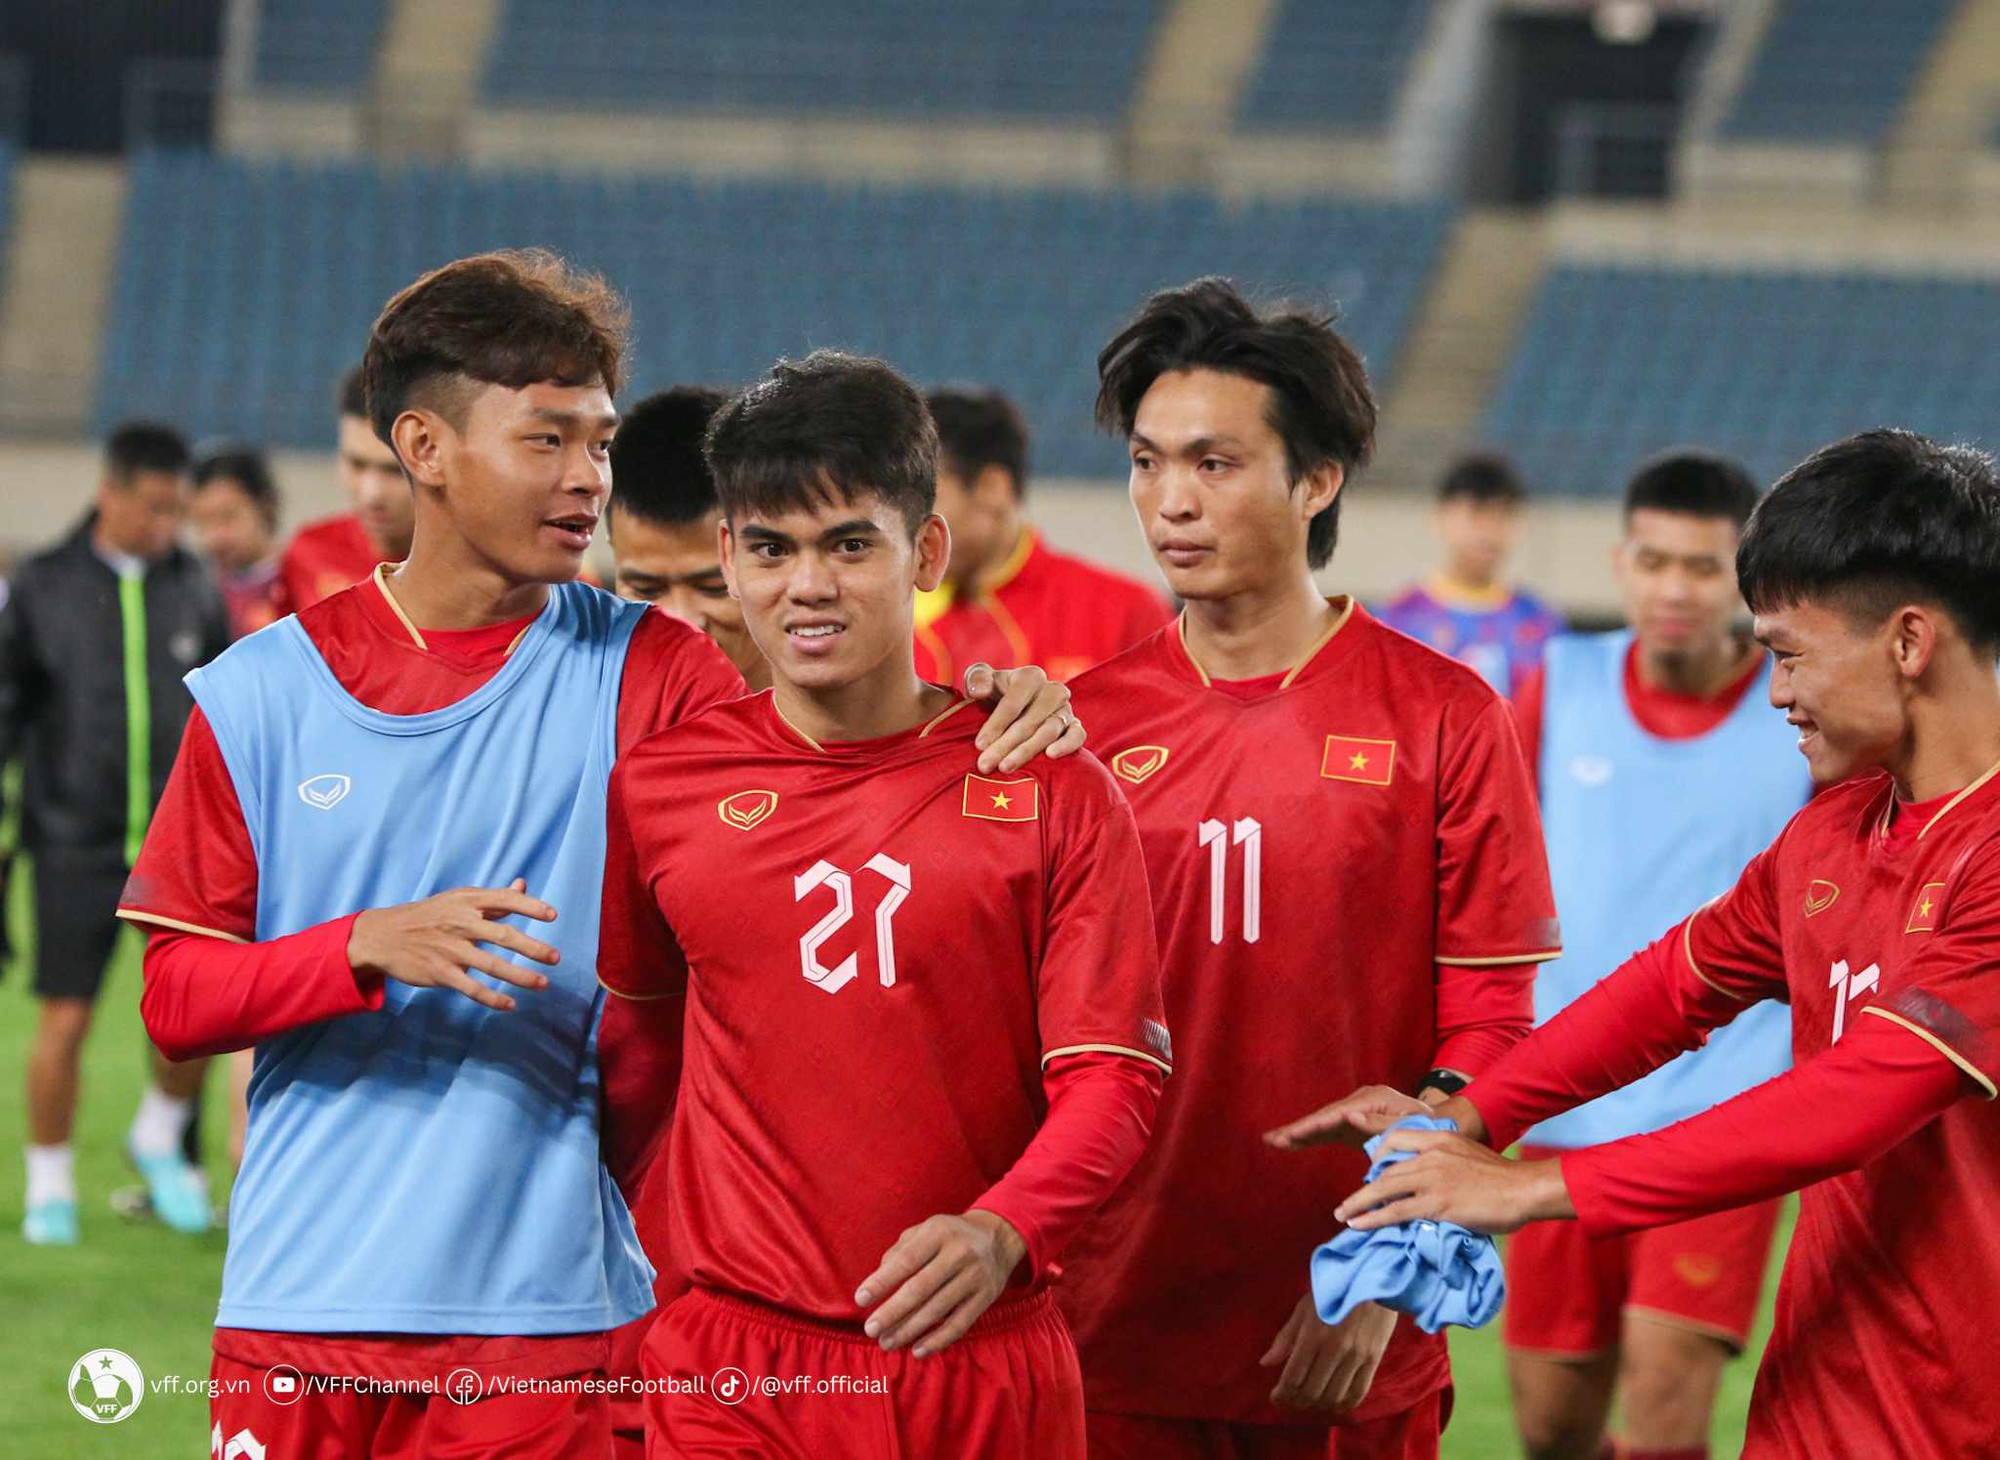 VFF đề ra chiến lược gì để đội tuyển Việt Nam nuôi mộng World Cup? - Ảnh 1.